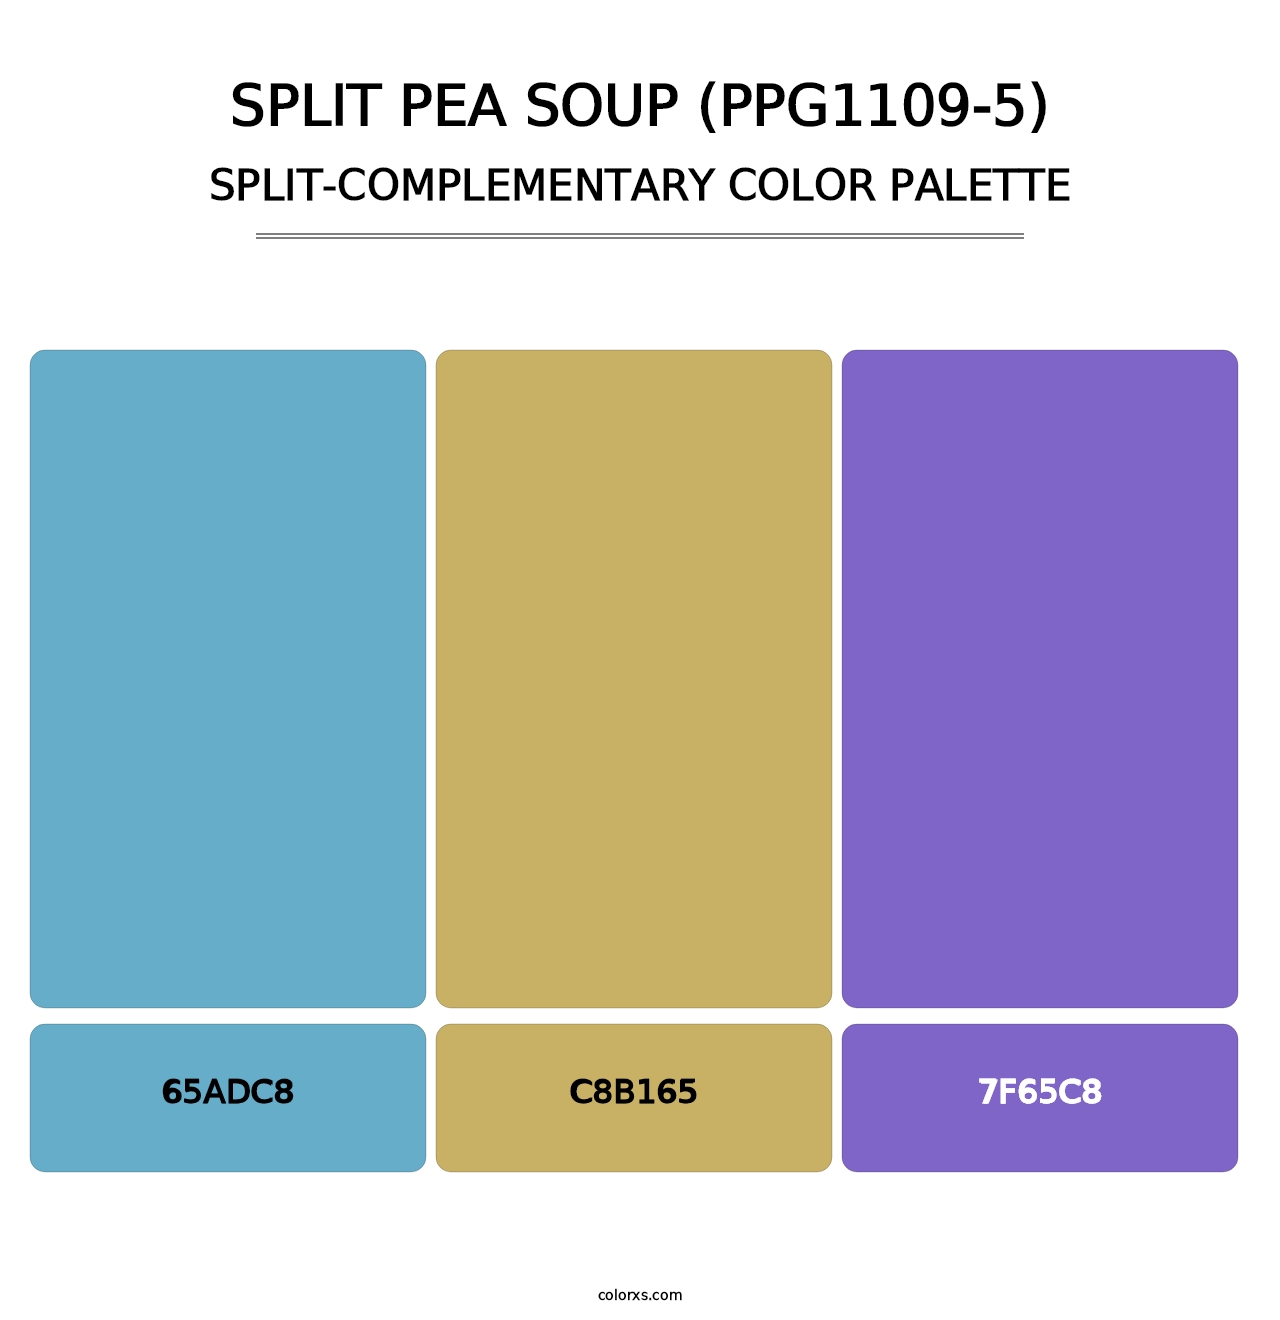 Split Pea Soup (PPG1109-5) - Split-Complementary Color Palette